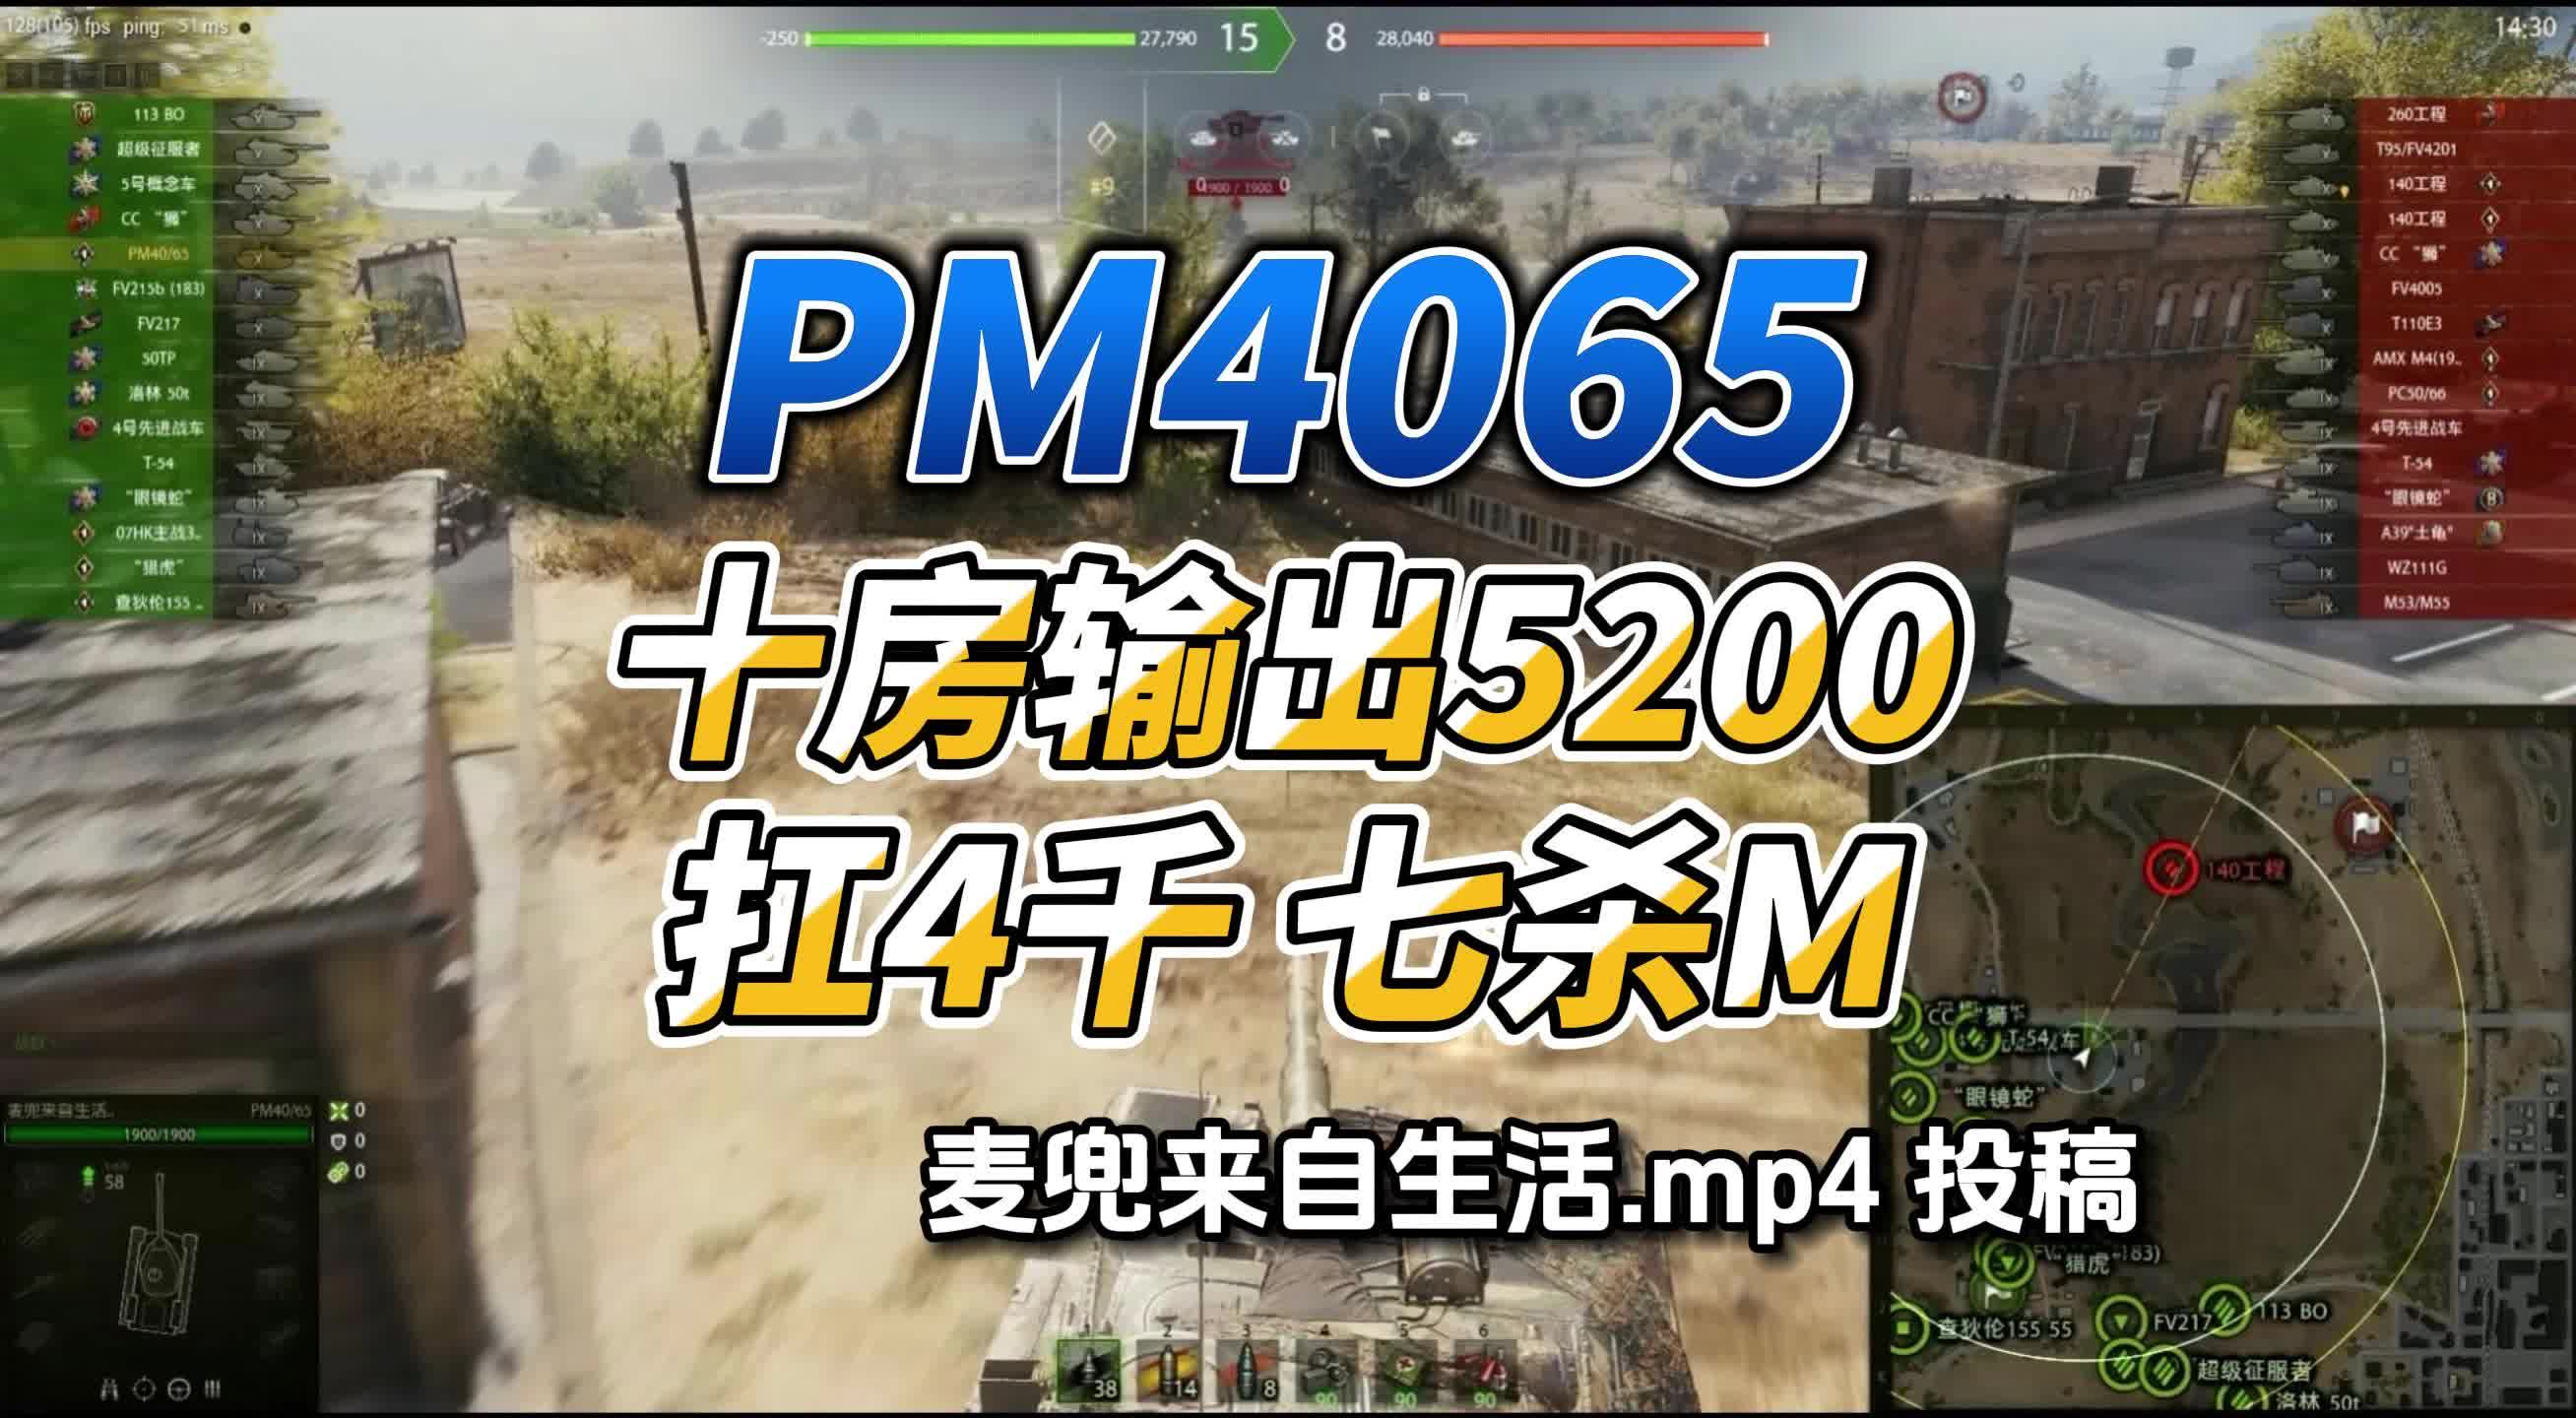 PM4065十房输出5200点4000 七杀把M 麦兜来自生活投稿 #坦克世界